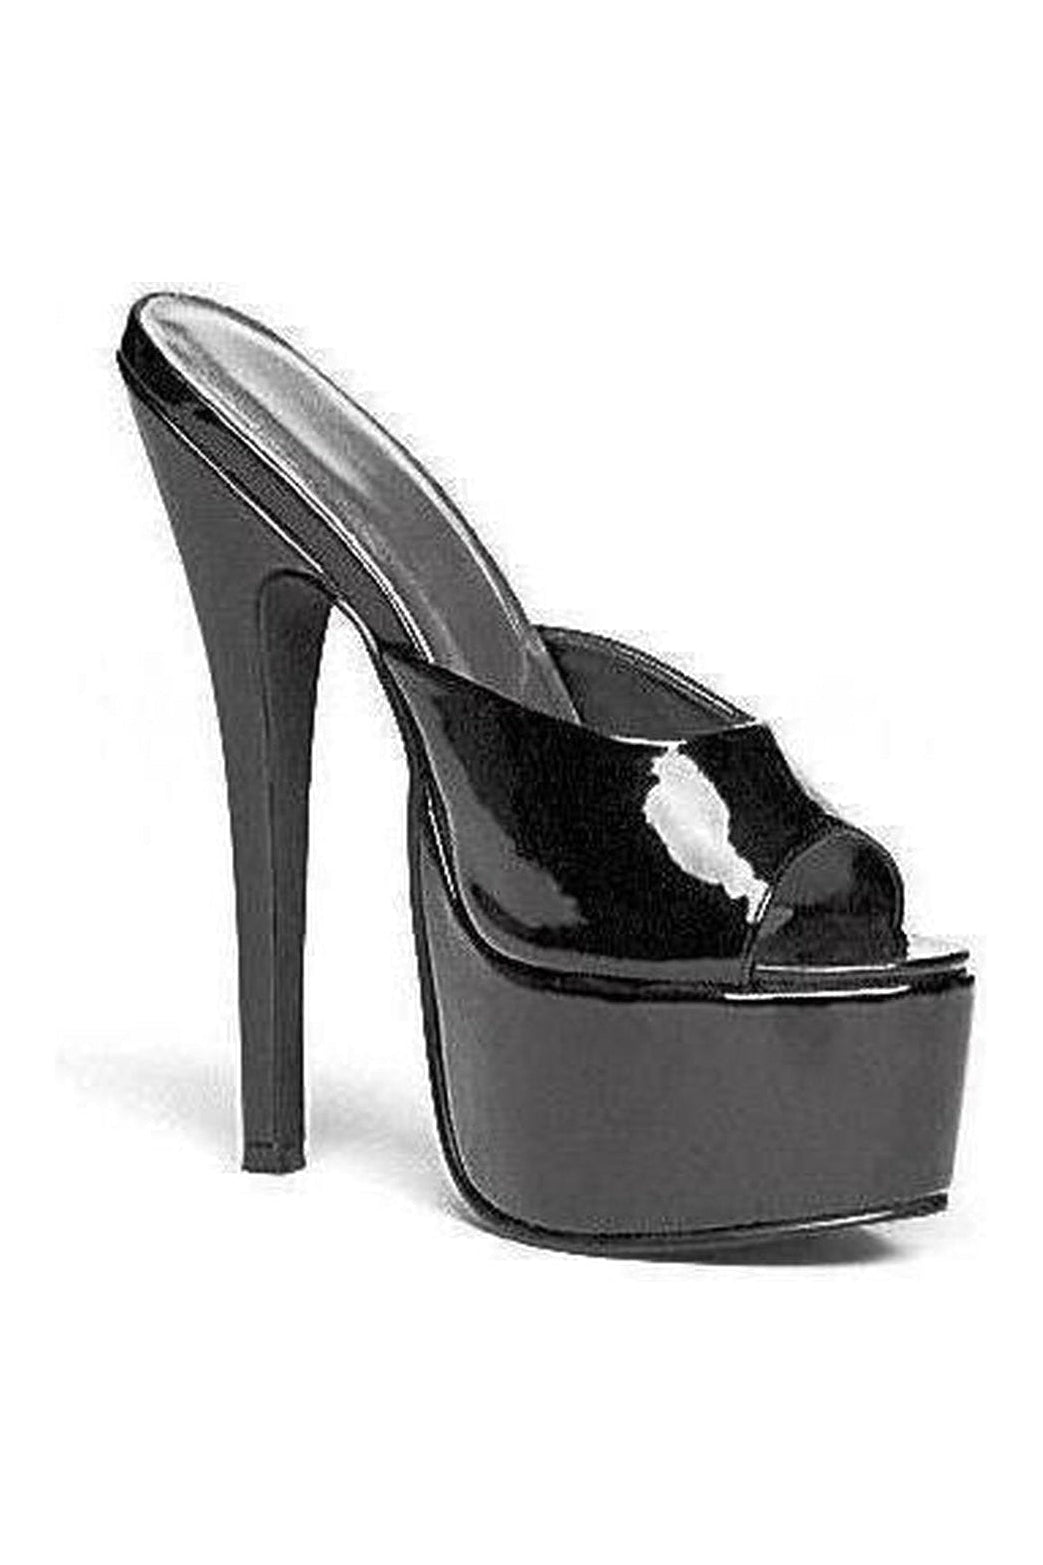 652-VANITY Platform Slide | Black Patent-Slides- Stripper Shoes at SEXYSHOES.COM